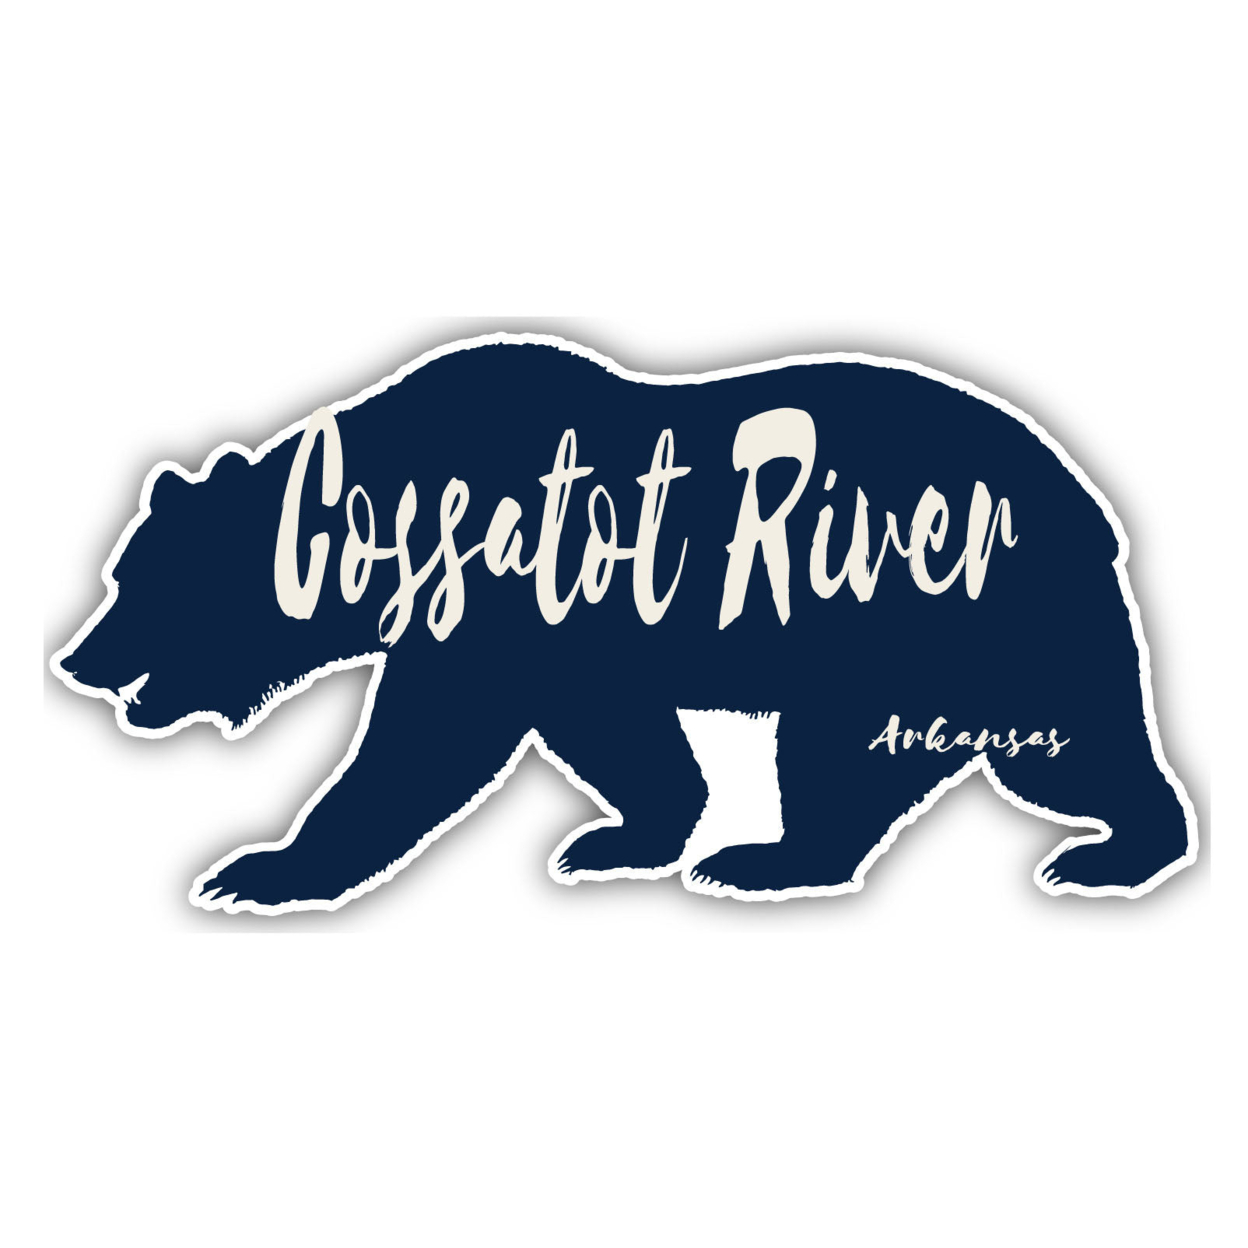 Cossatot River Arkansas Souvenir Decorative Stickers (Choose Theme And Size) - Single Unit, 2-Inch, Bear